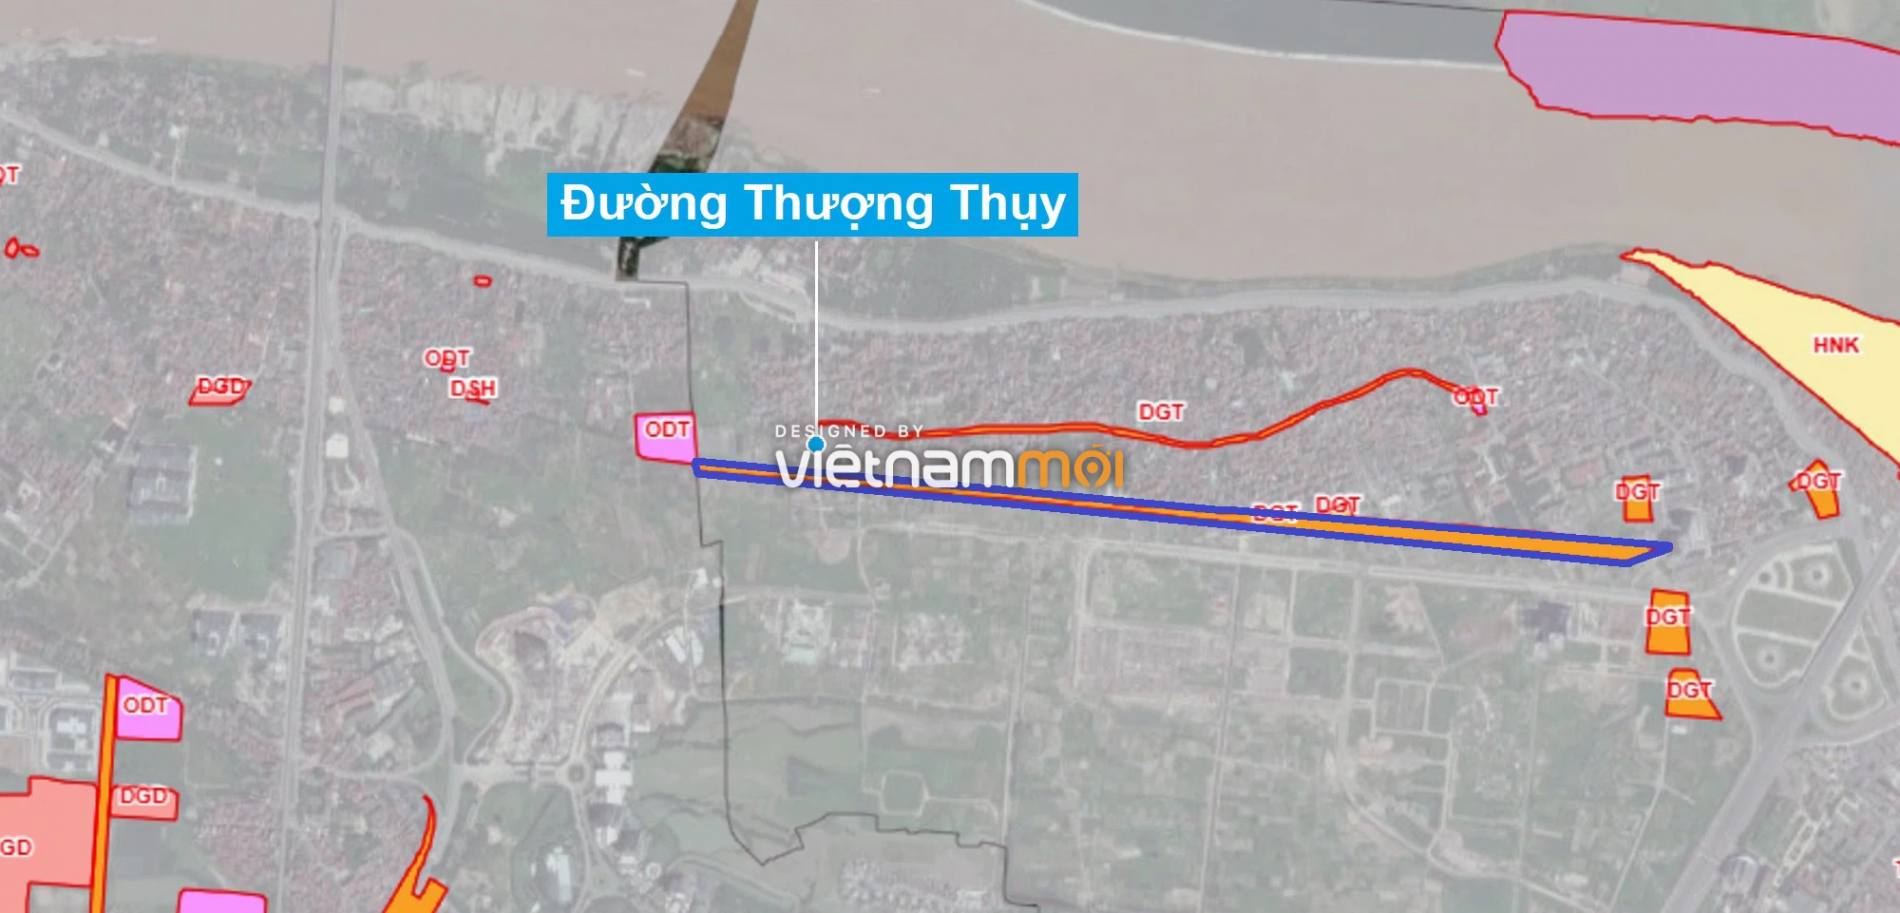 Những khu đất sắp thu hồi để mở đường ở quận Tây Hồ, Hà Nội (phần 3) - Ảnh 6.